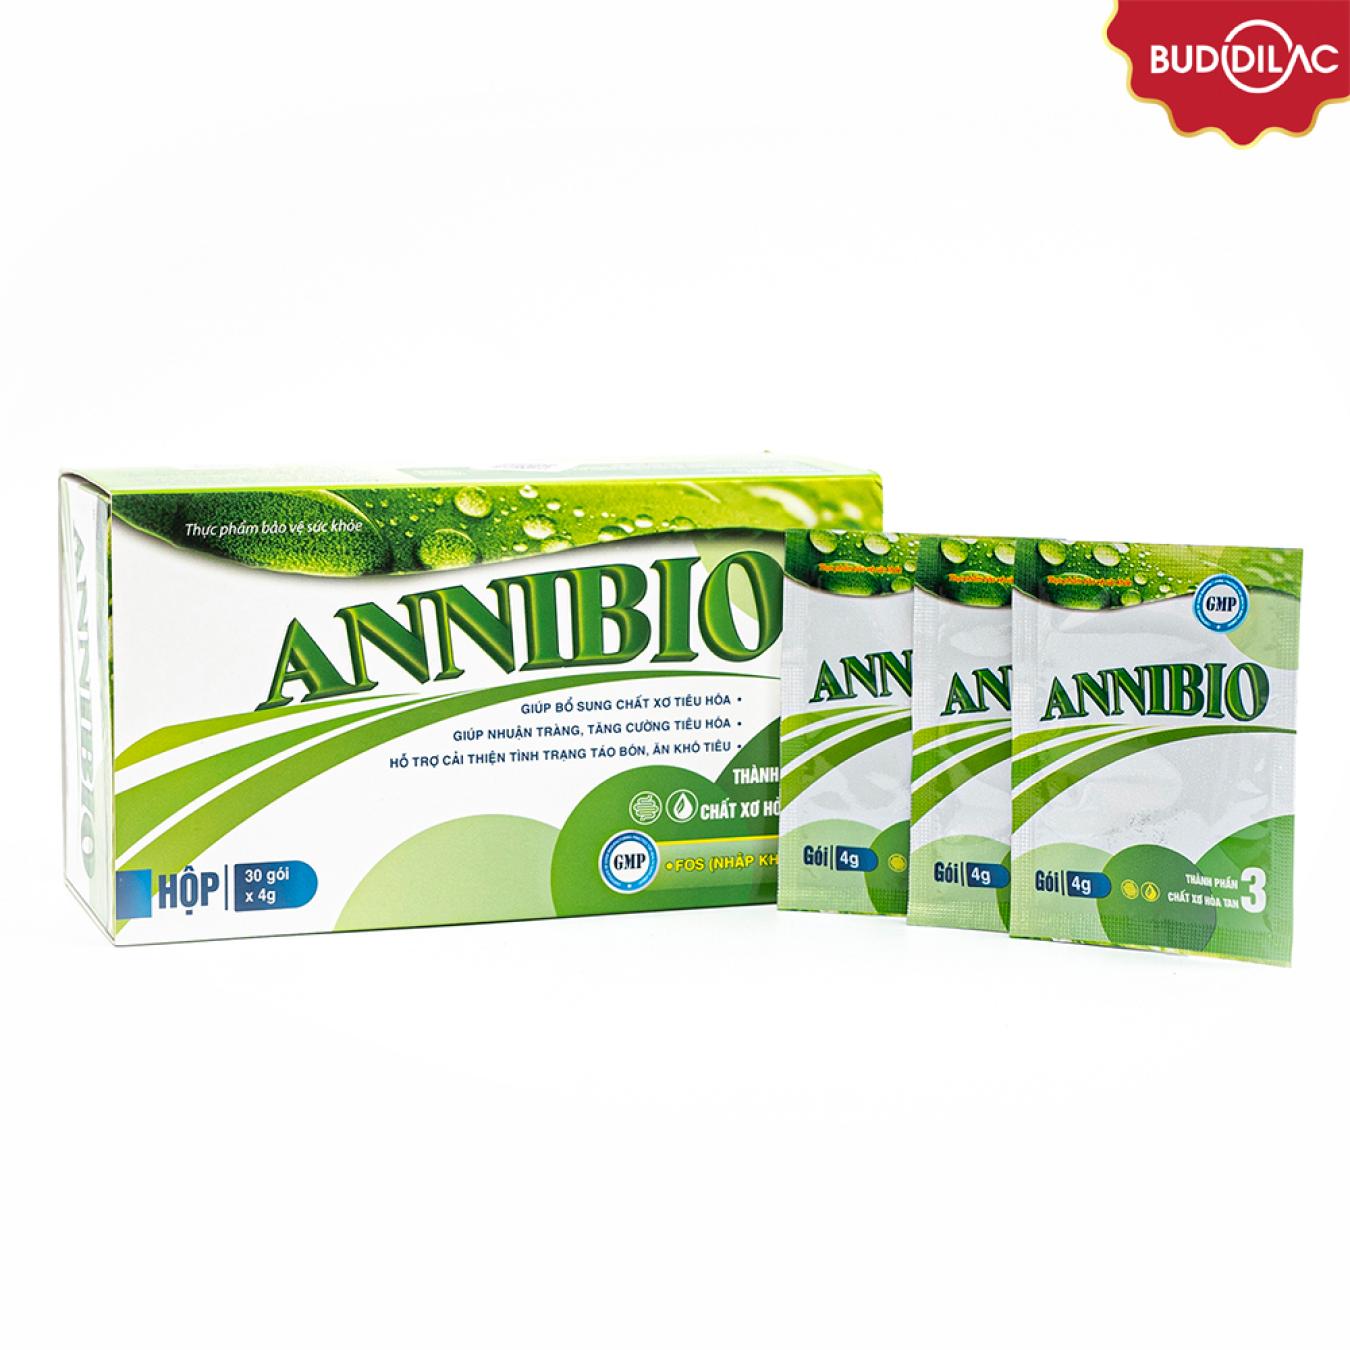 Annibio - Bổ sung chất xơ, tăng cường tiêu hóa